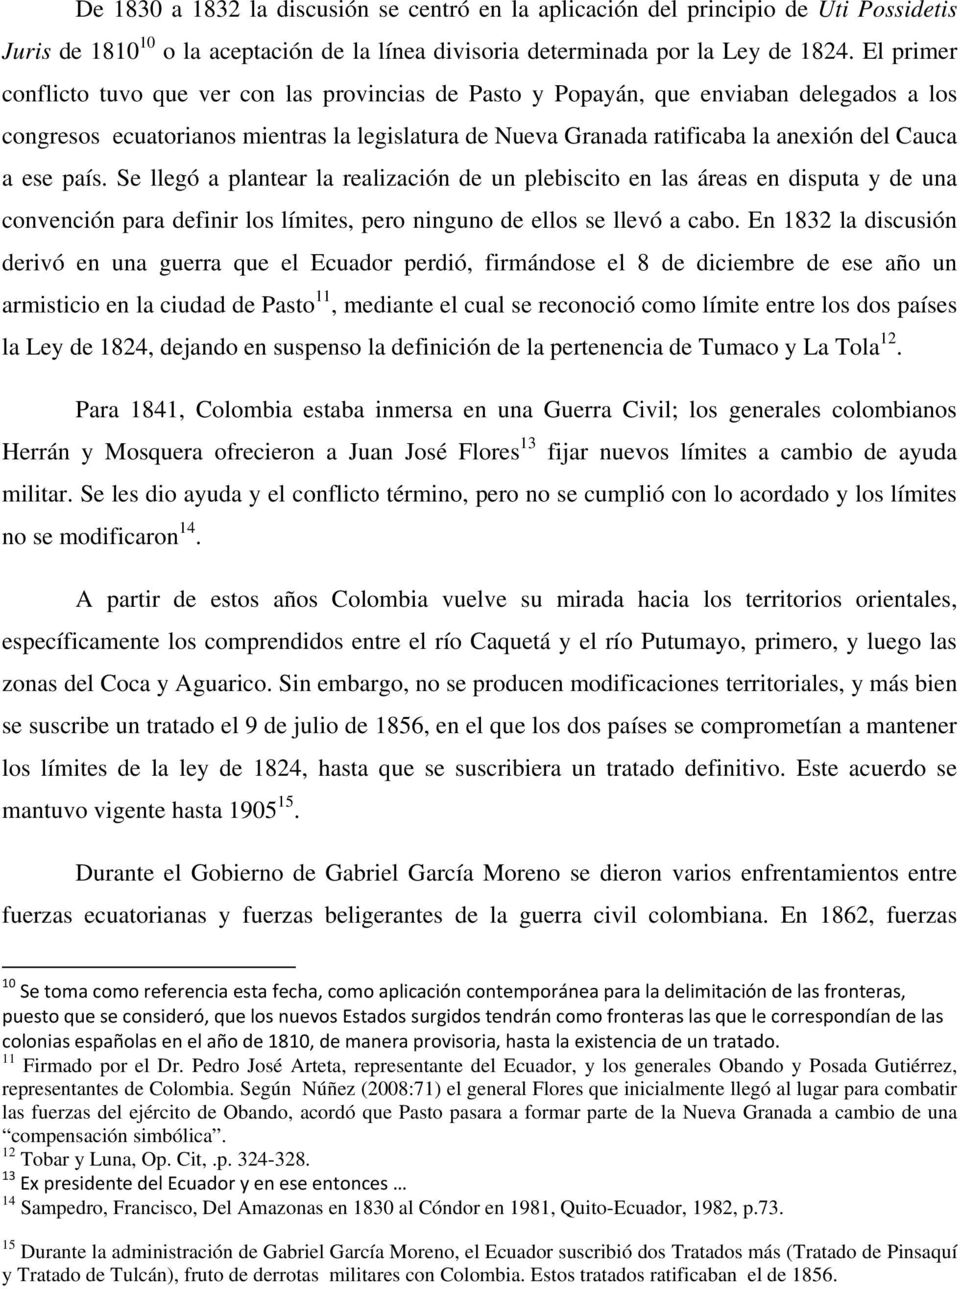 El primer conflicto tuvo que ver con las provincias de Pasto y Popayán, que enviaban delegados a los congresos ecuatorianos mientras la legislatura de Nueva Granada ratificaba la anexión del Cauca a